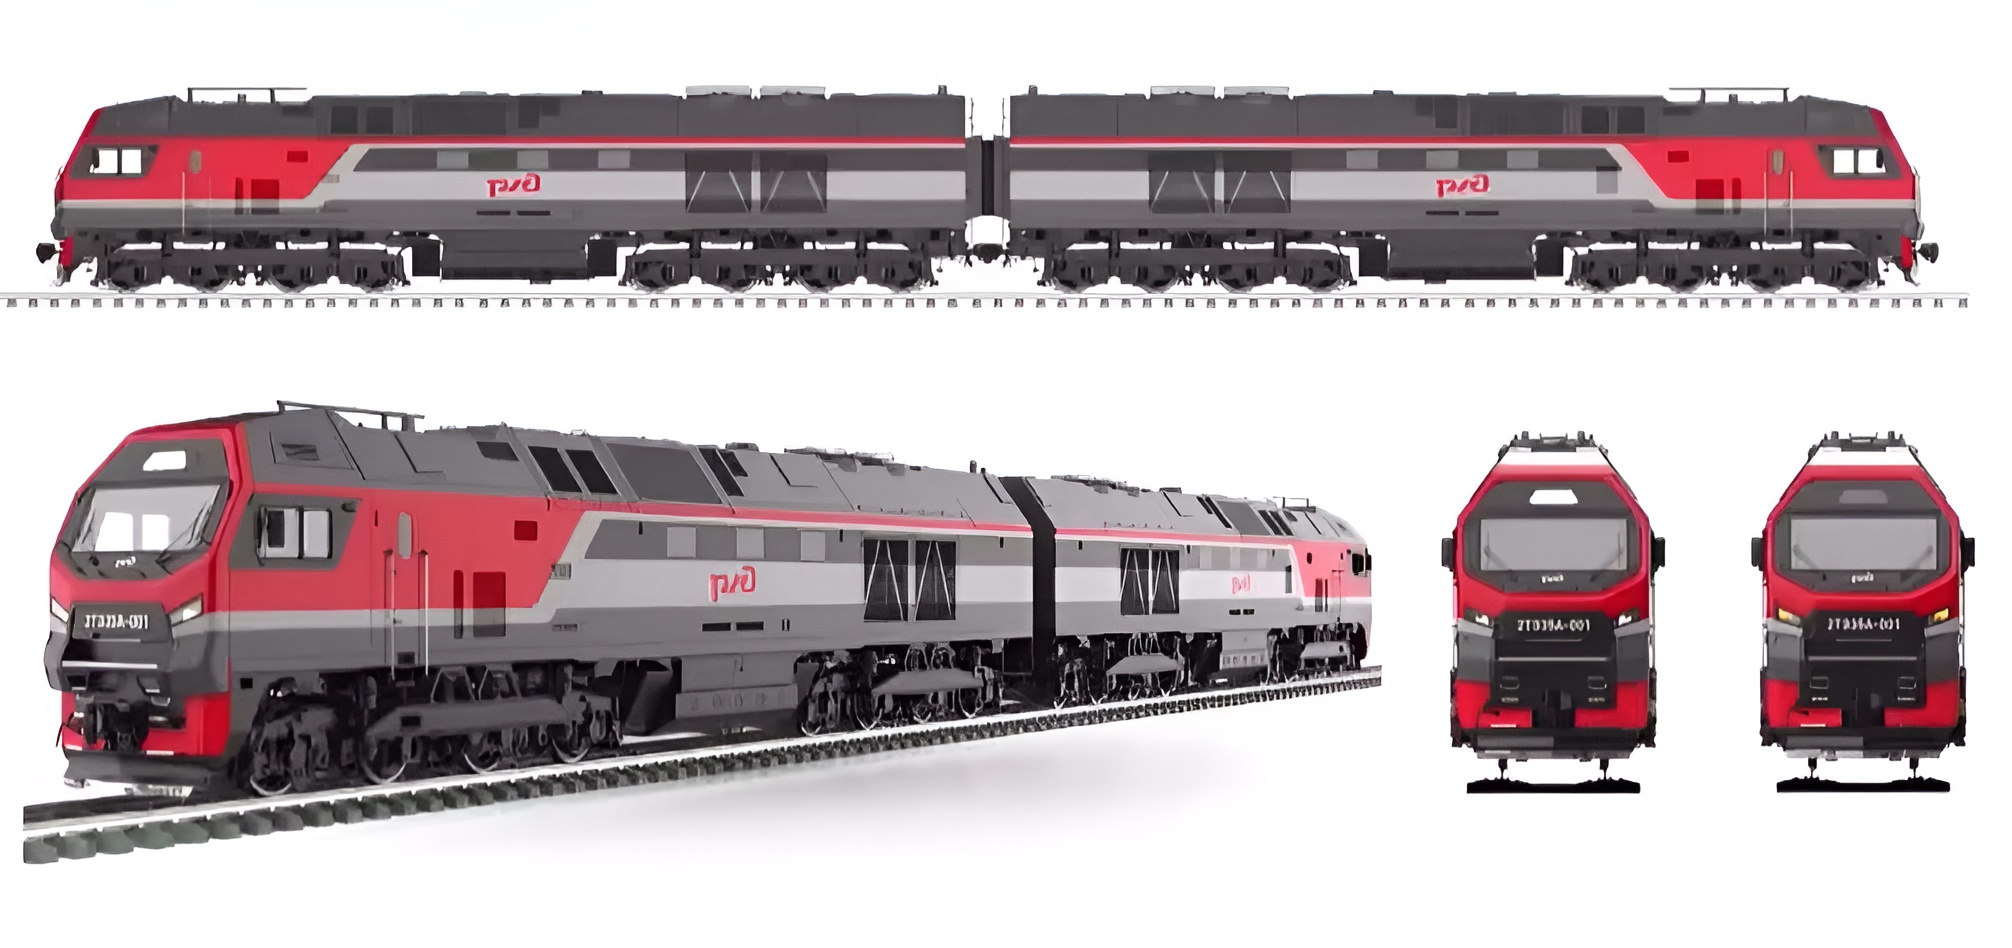 The rendering of the 2TE35A mainline diesel locomotive